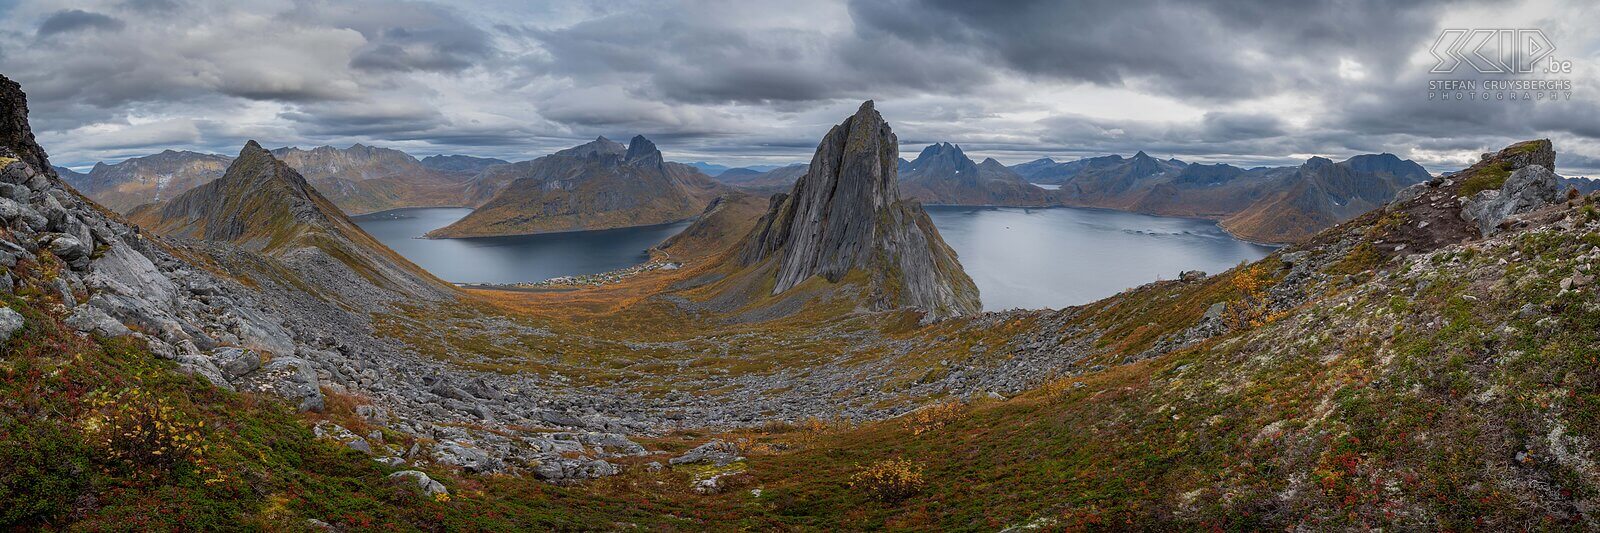 Senja - Segla - Panorama Panorambeeld met links de Oyfjorden, in het midden de prachtige rotspiek van de Segla en rechts de Mefjorden Stefan Cruysberghs